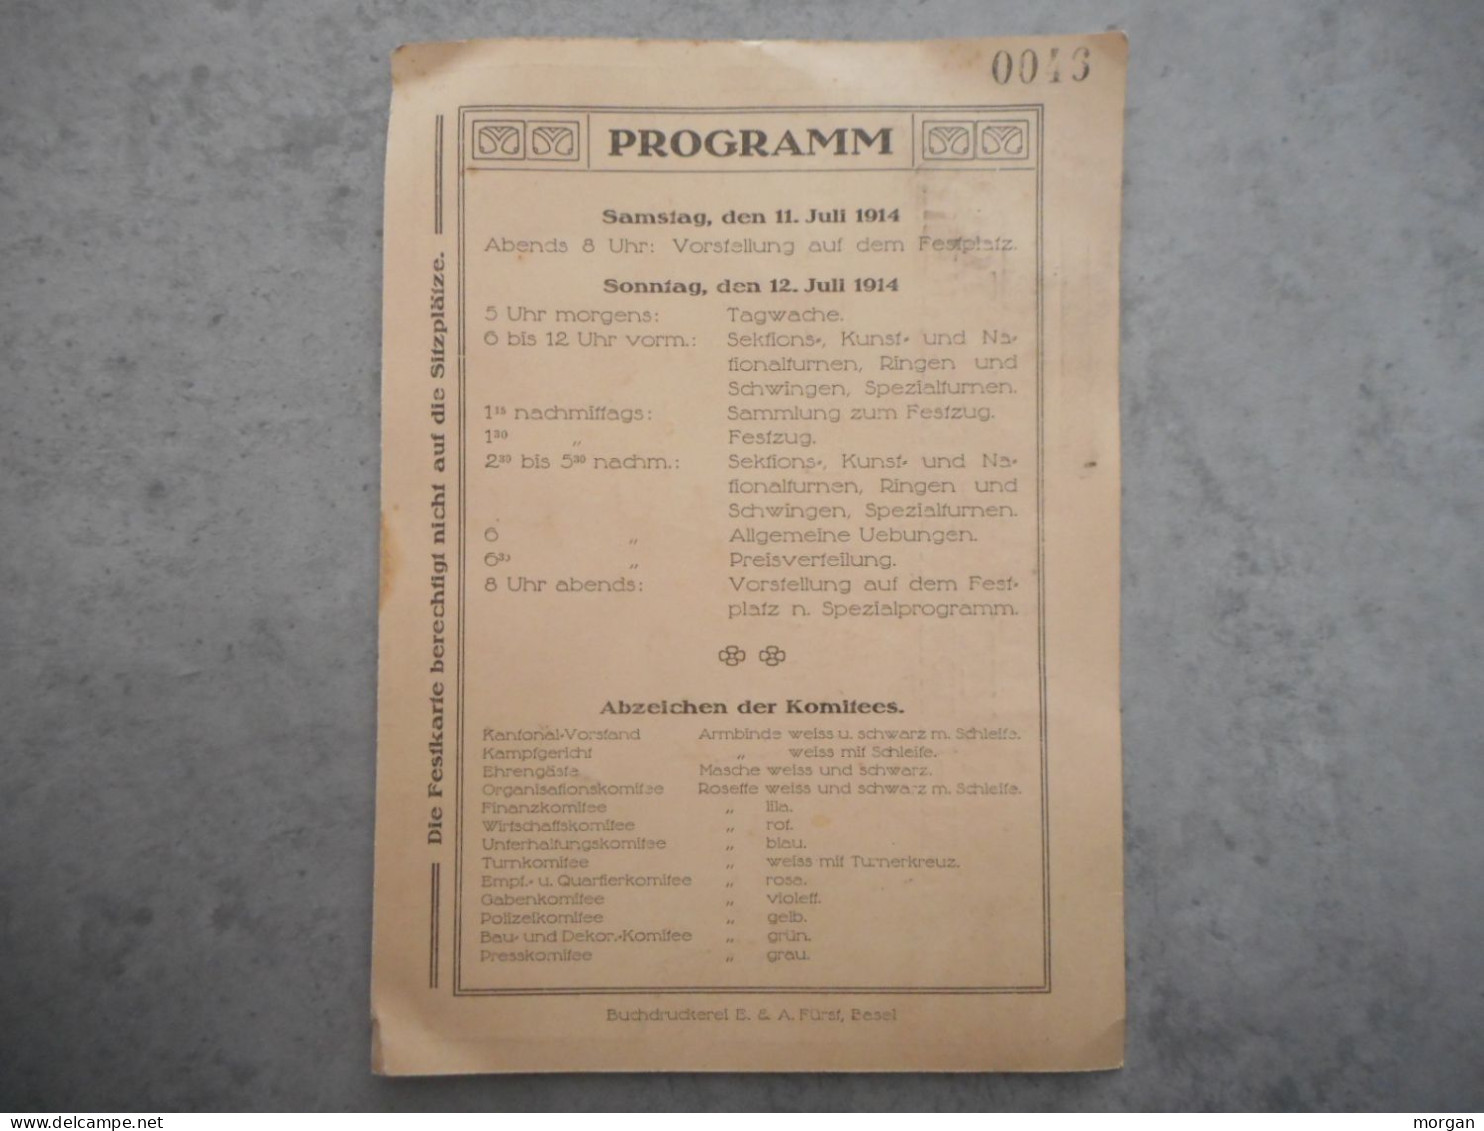 SUISSE, BALE, BASEL, 1914, PROGRAMME BASELSTADTISCHES KANTONALTURNFEST, BASEL HORBURG JULI 1914, FESTKARTE - Posters